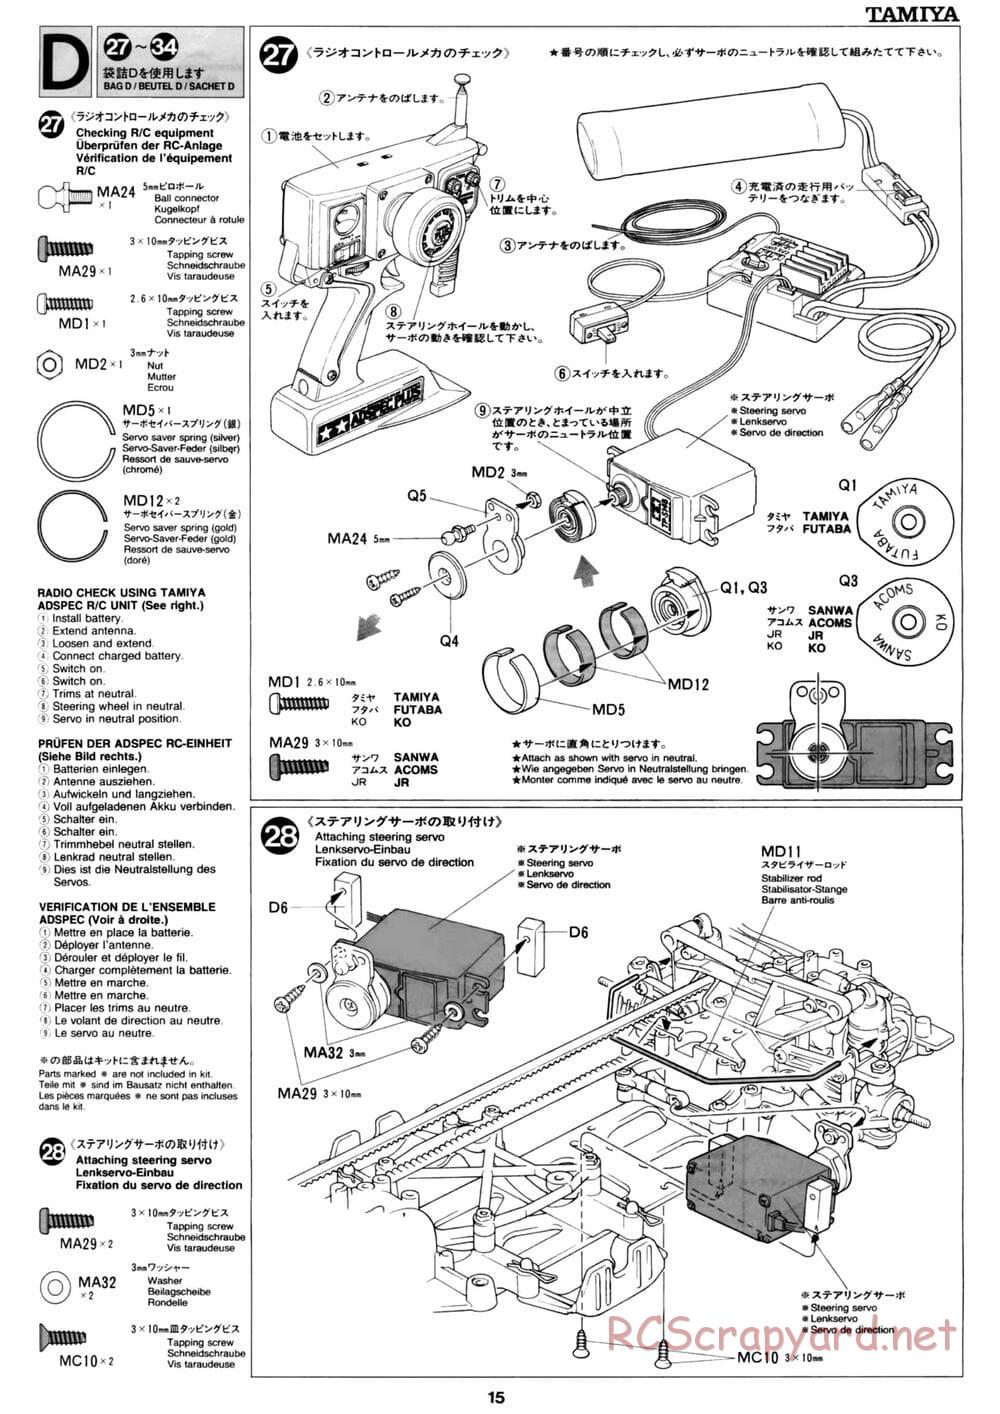 Tamiya - David Jun TA03F Pro Chassis - Manual - Page 15